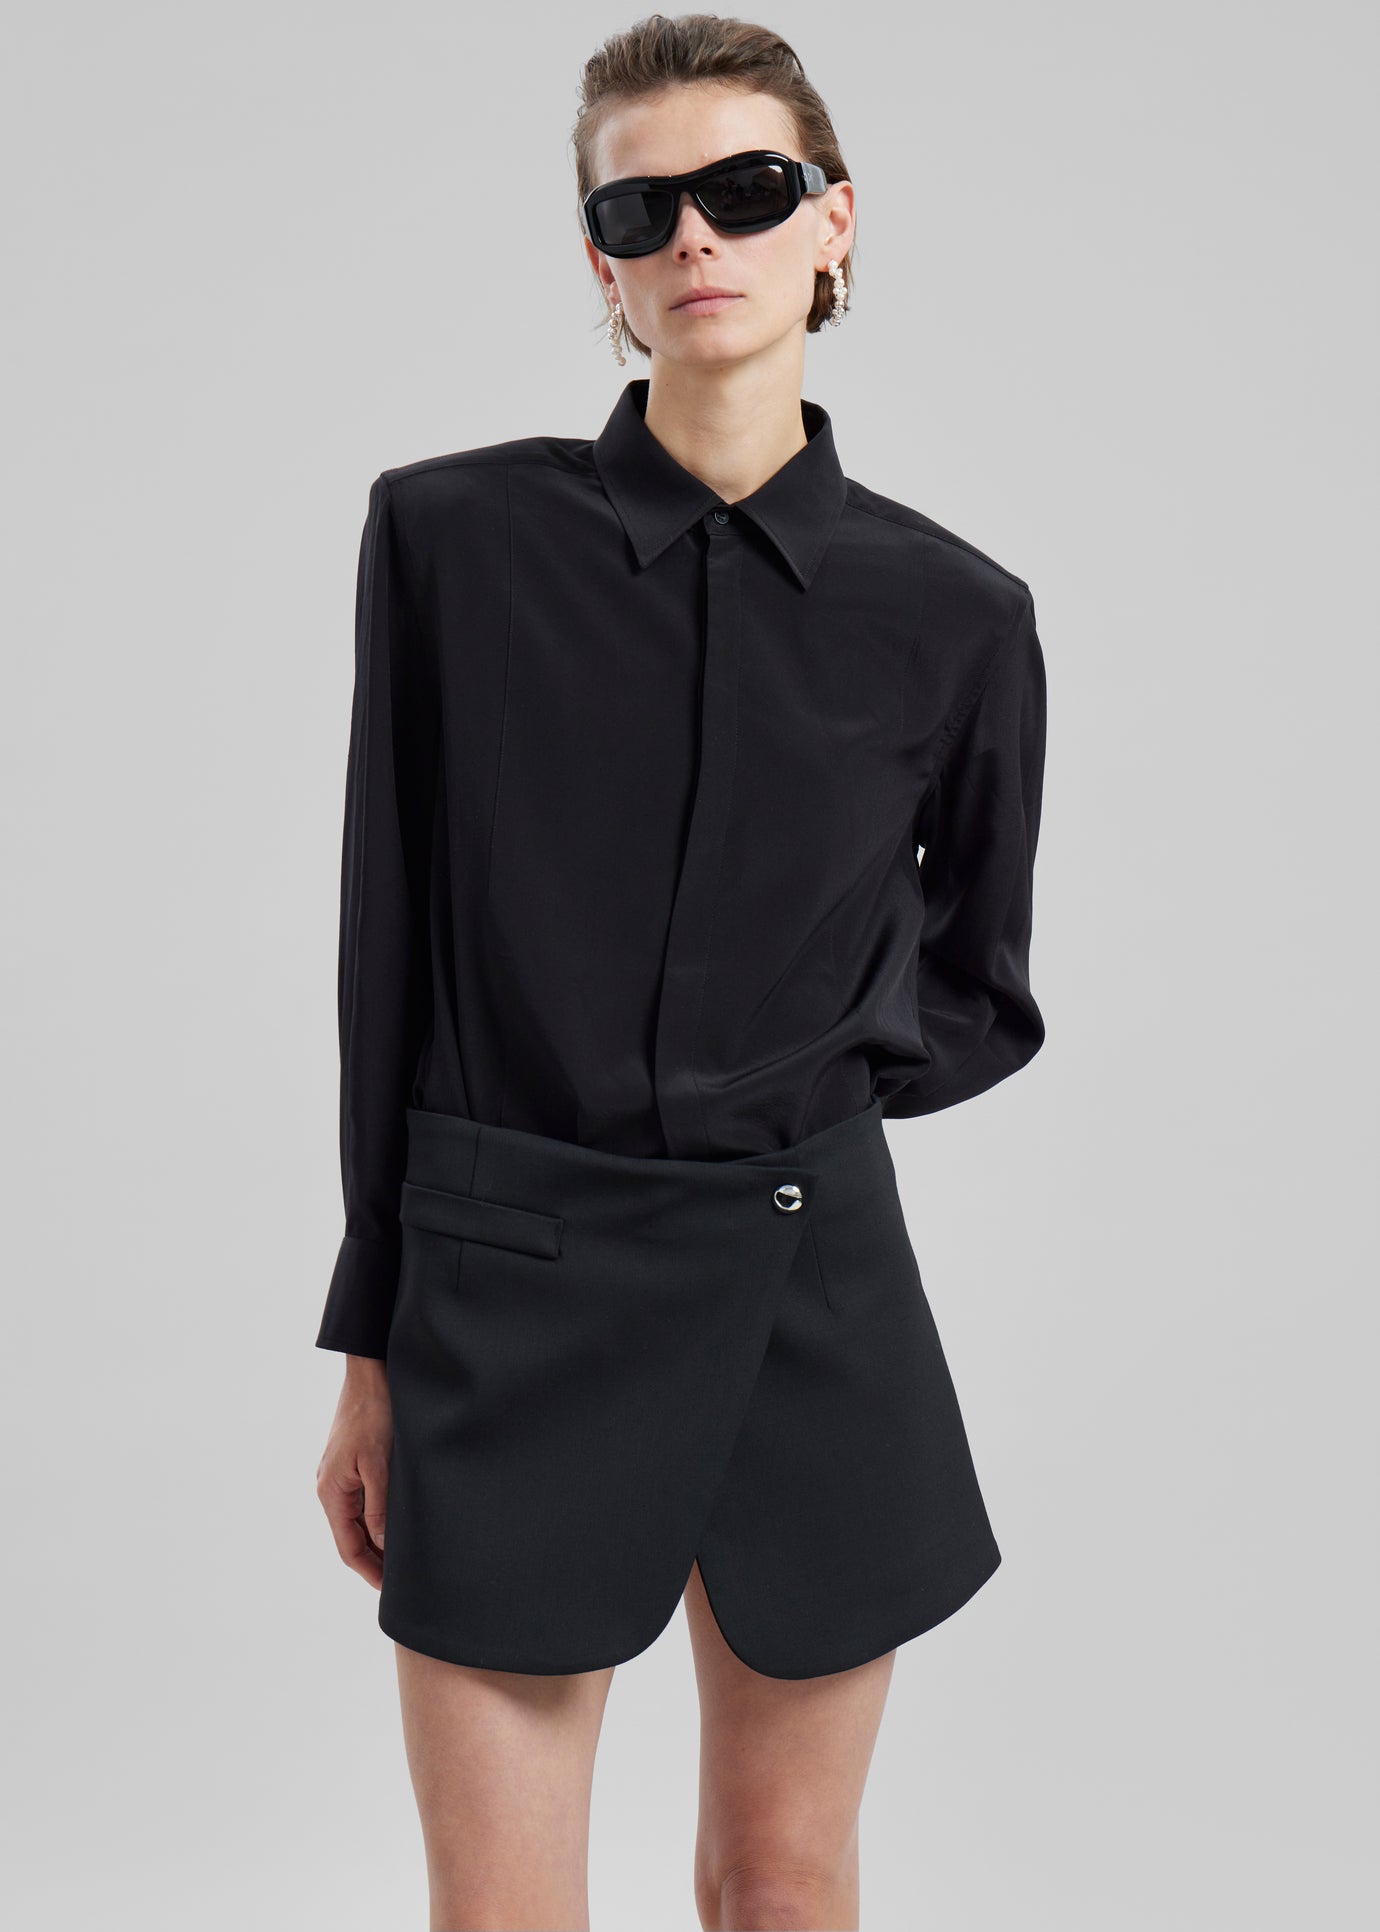 Coperni Tailored Mini Skirt - Black